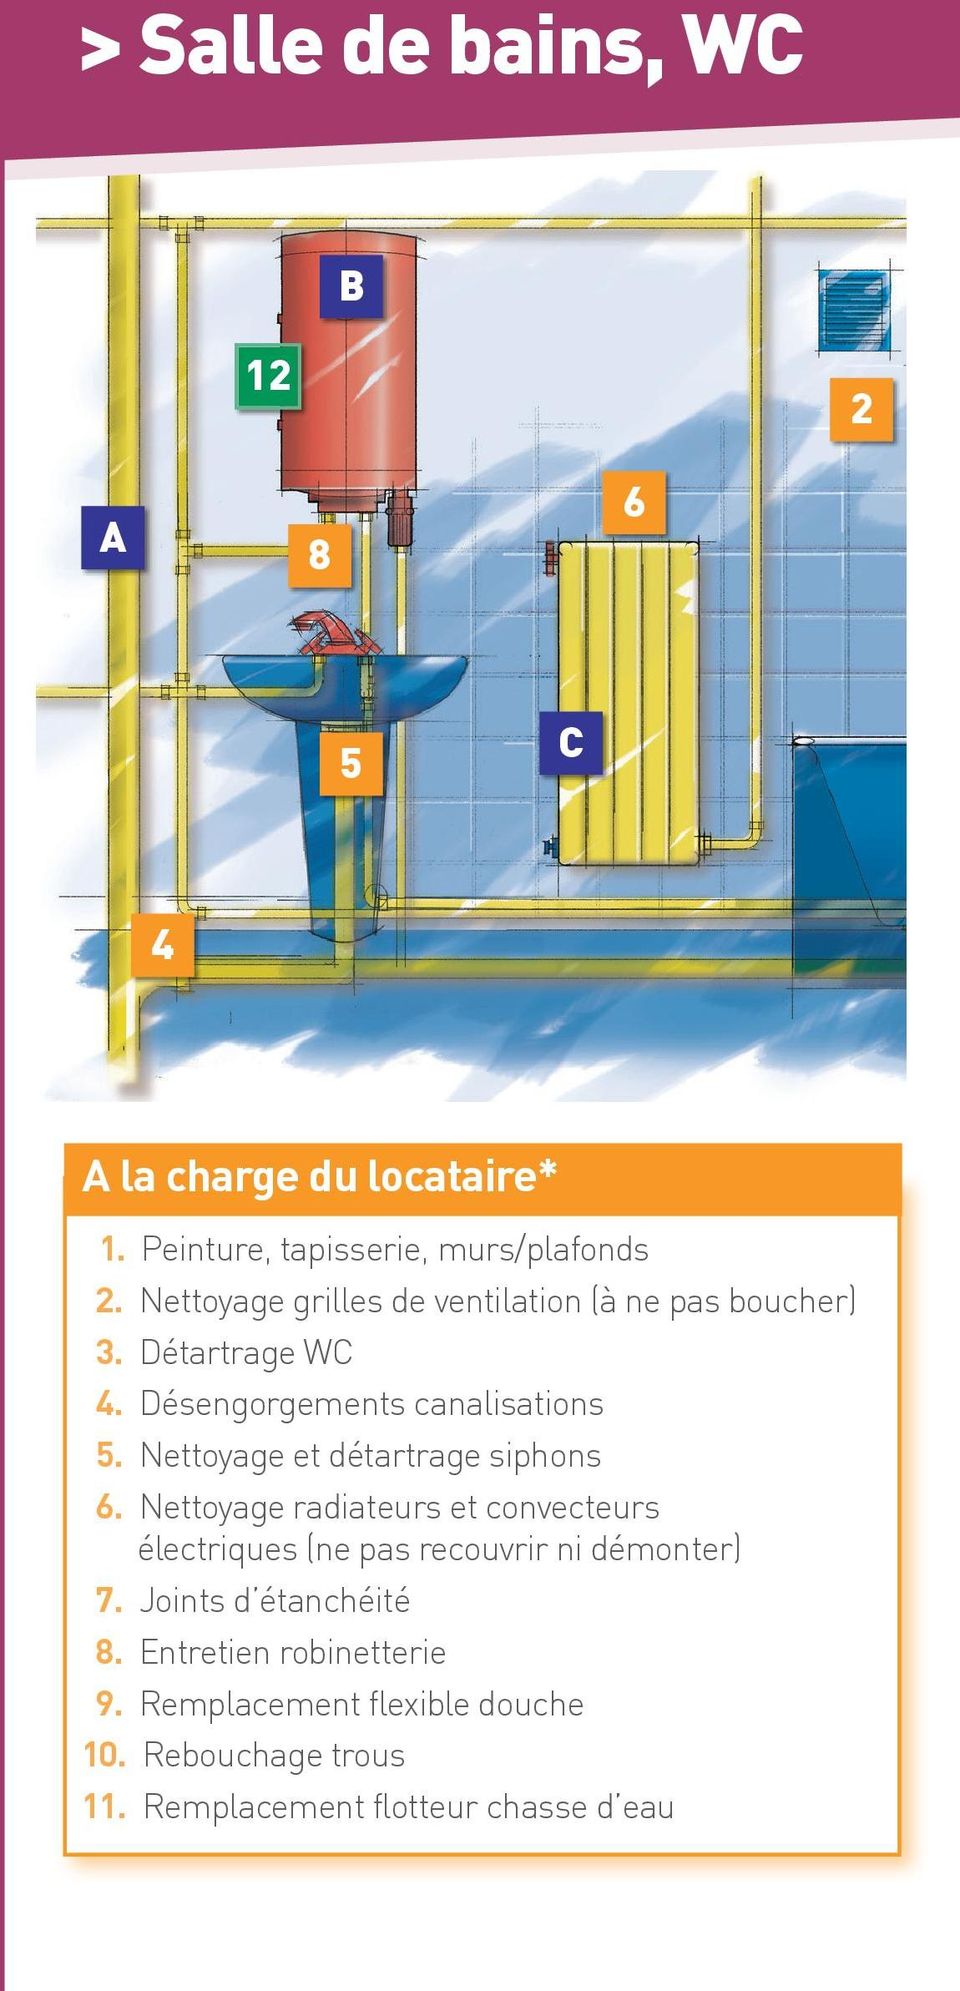 Nettoyage et détartrage siphons 6. Nettoyage radiateurs et convecteurs électriques (ne pas recouvrir ni démonter) 7.